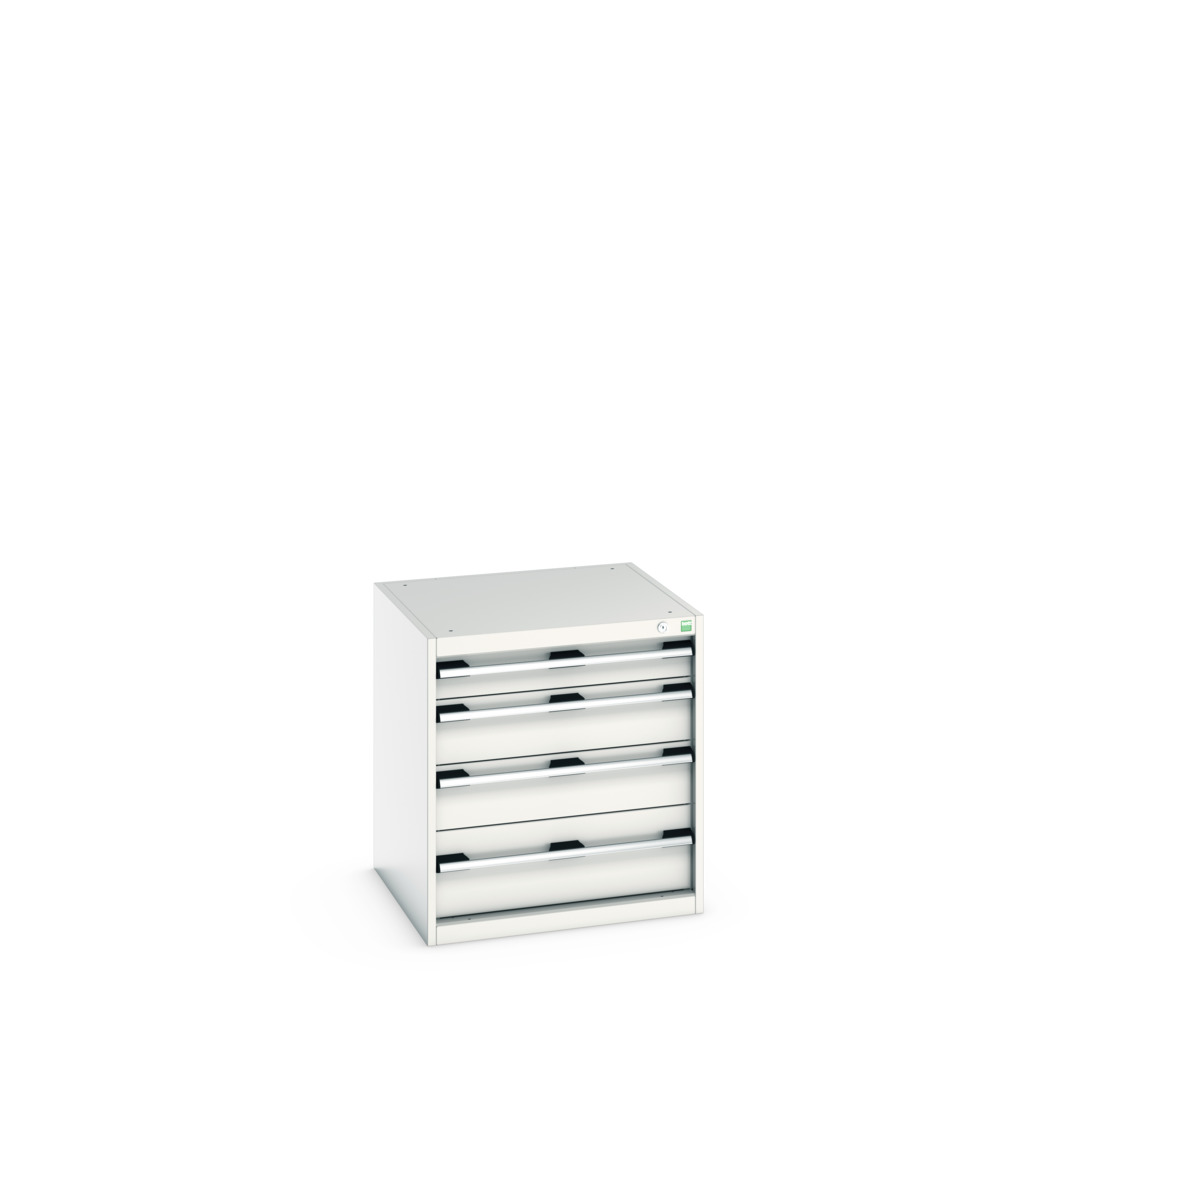 40019025.16V - cubio drawer cabinet